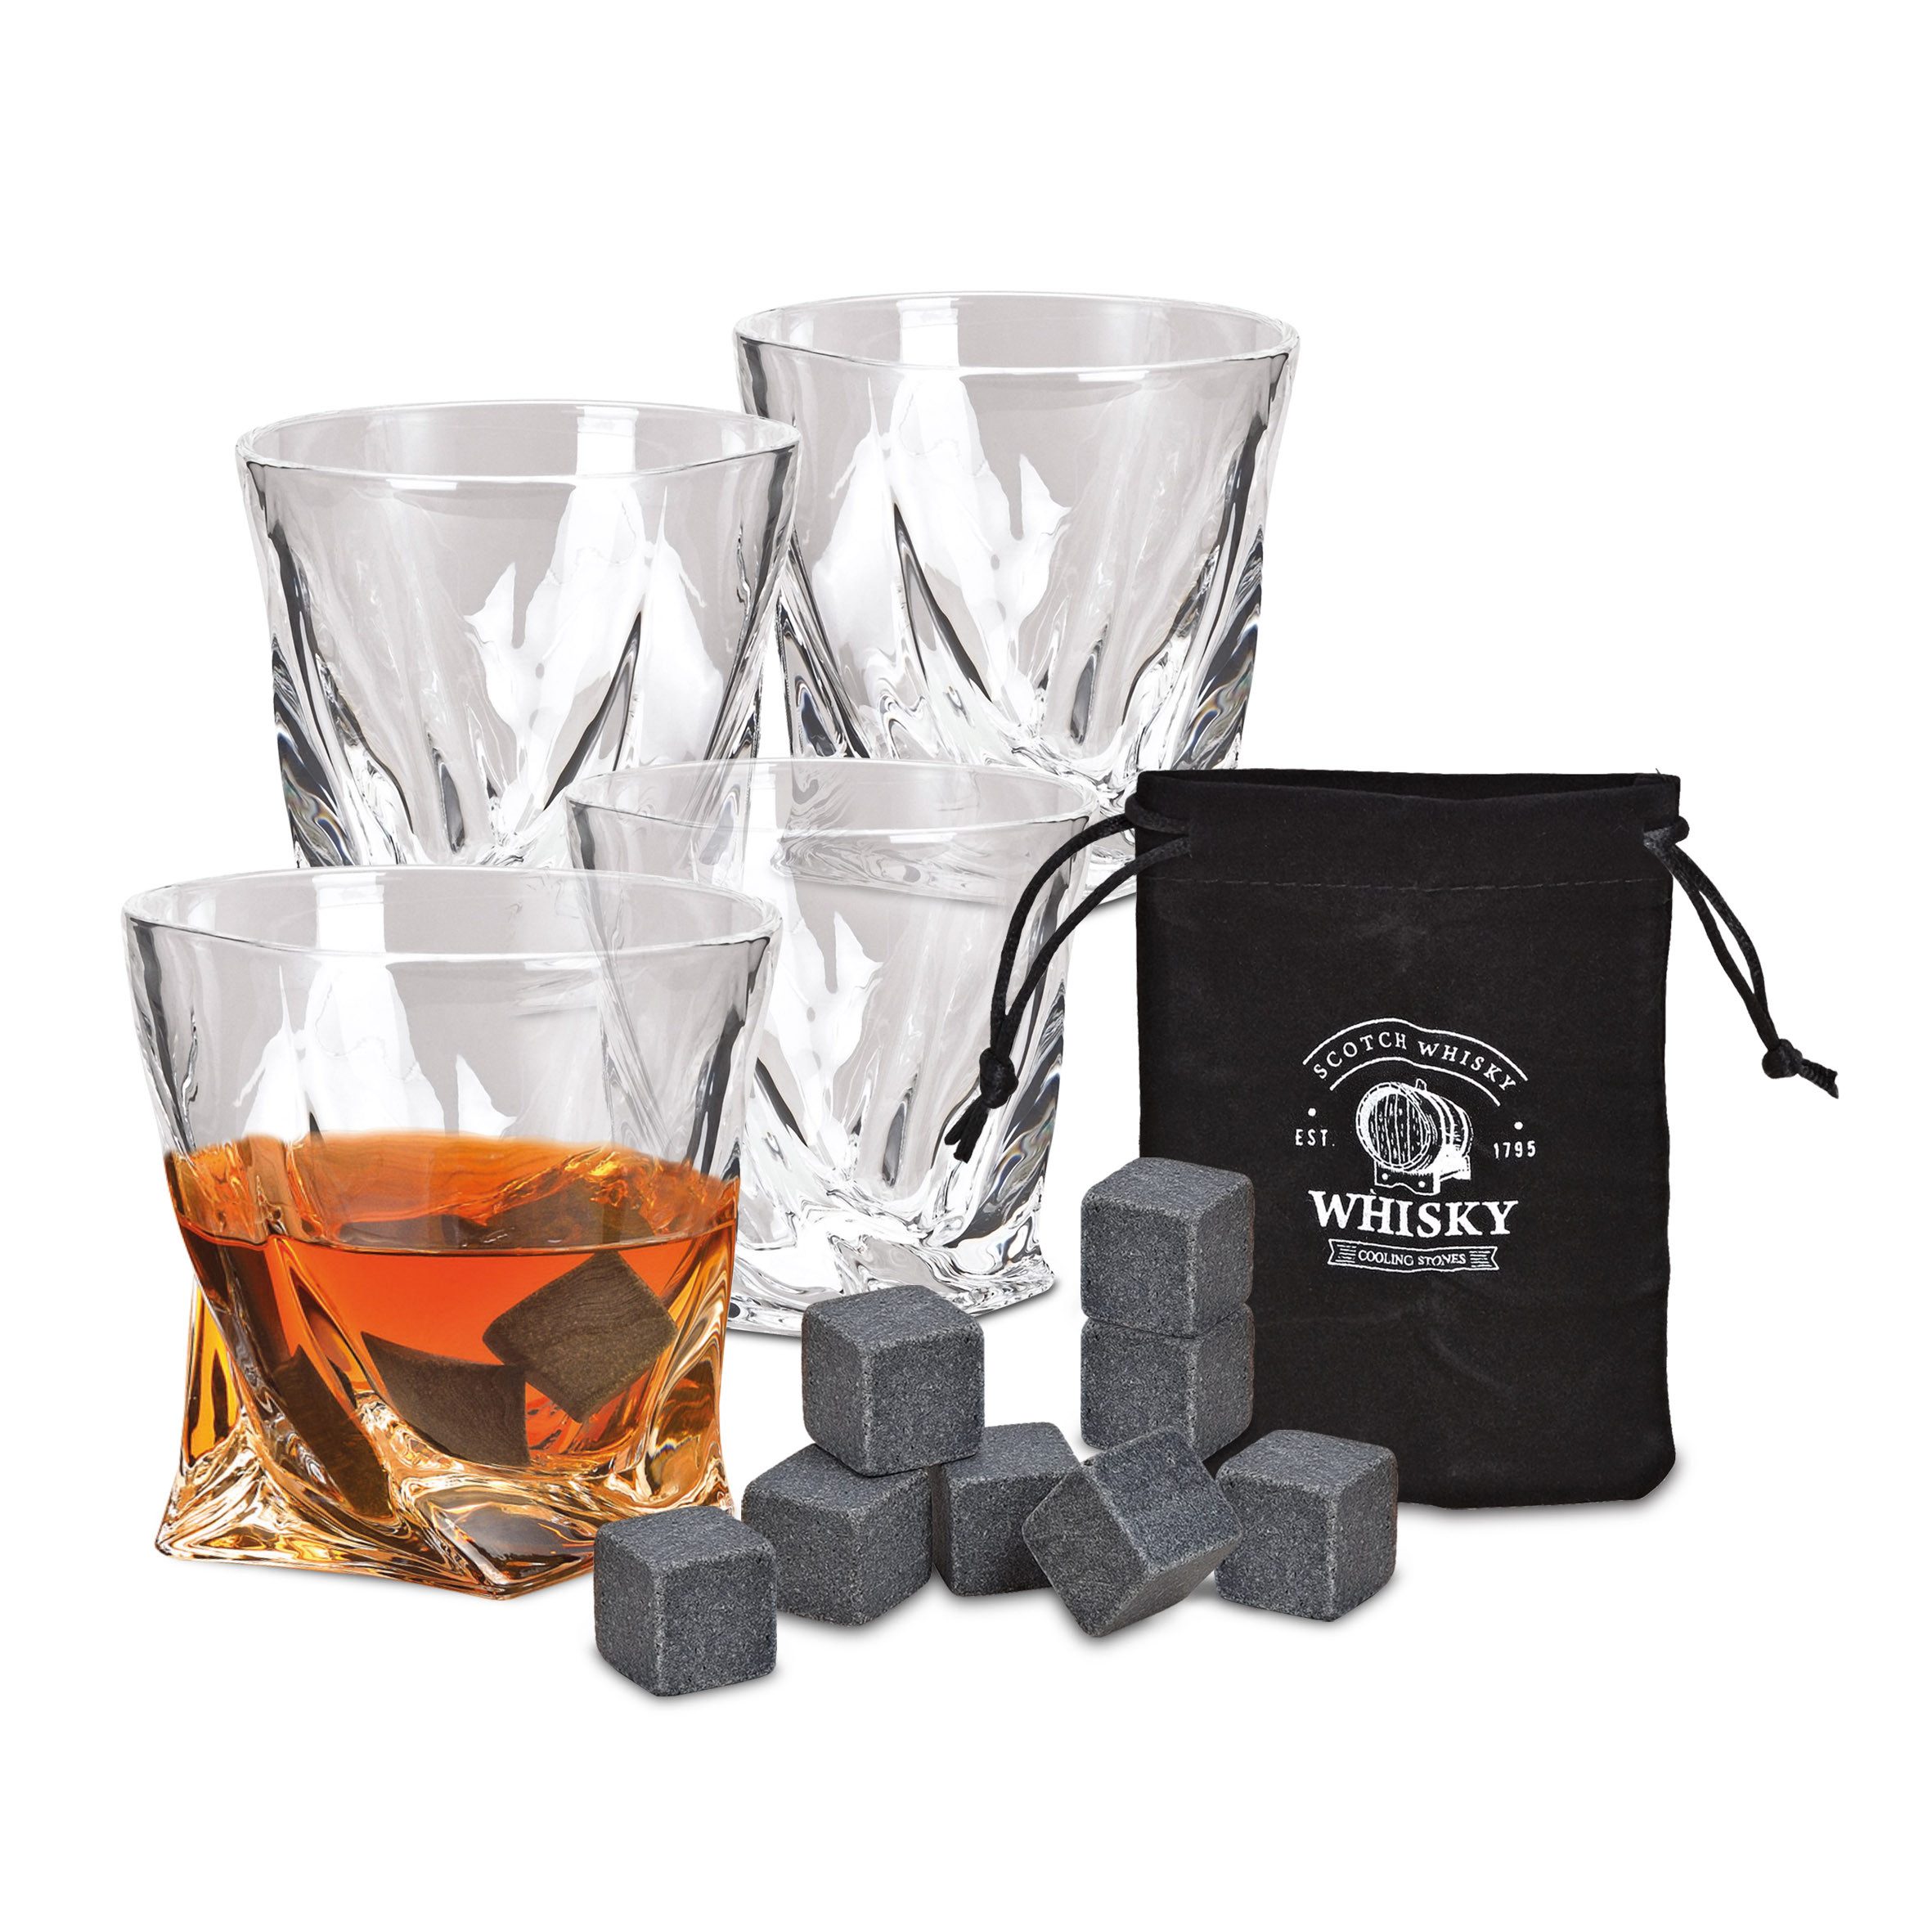 Woma Whiskyglas Whisky Glas Geschenk Set aus Kristallglas - 13-teilig, Kristallglas / Basalt, 4er Trinkglas Set mit 8x Basalt Kühlsteinen und Samtbeutel